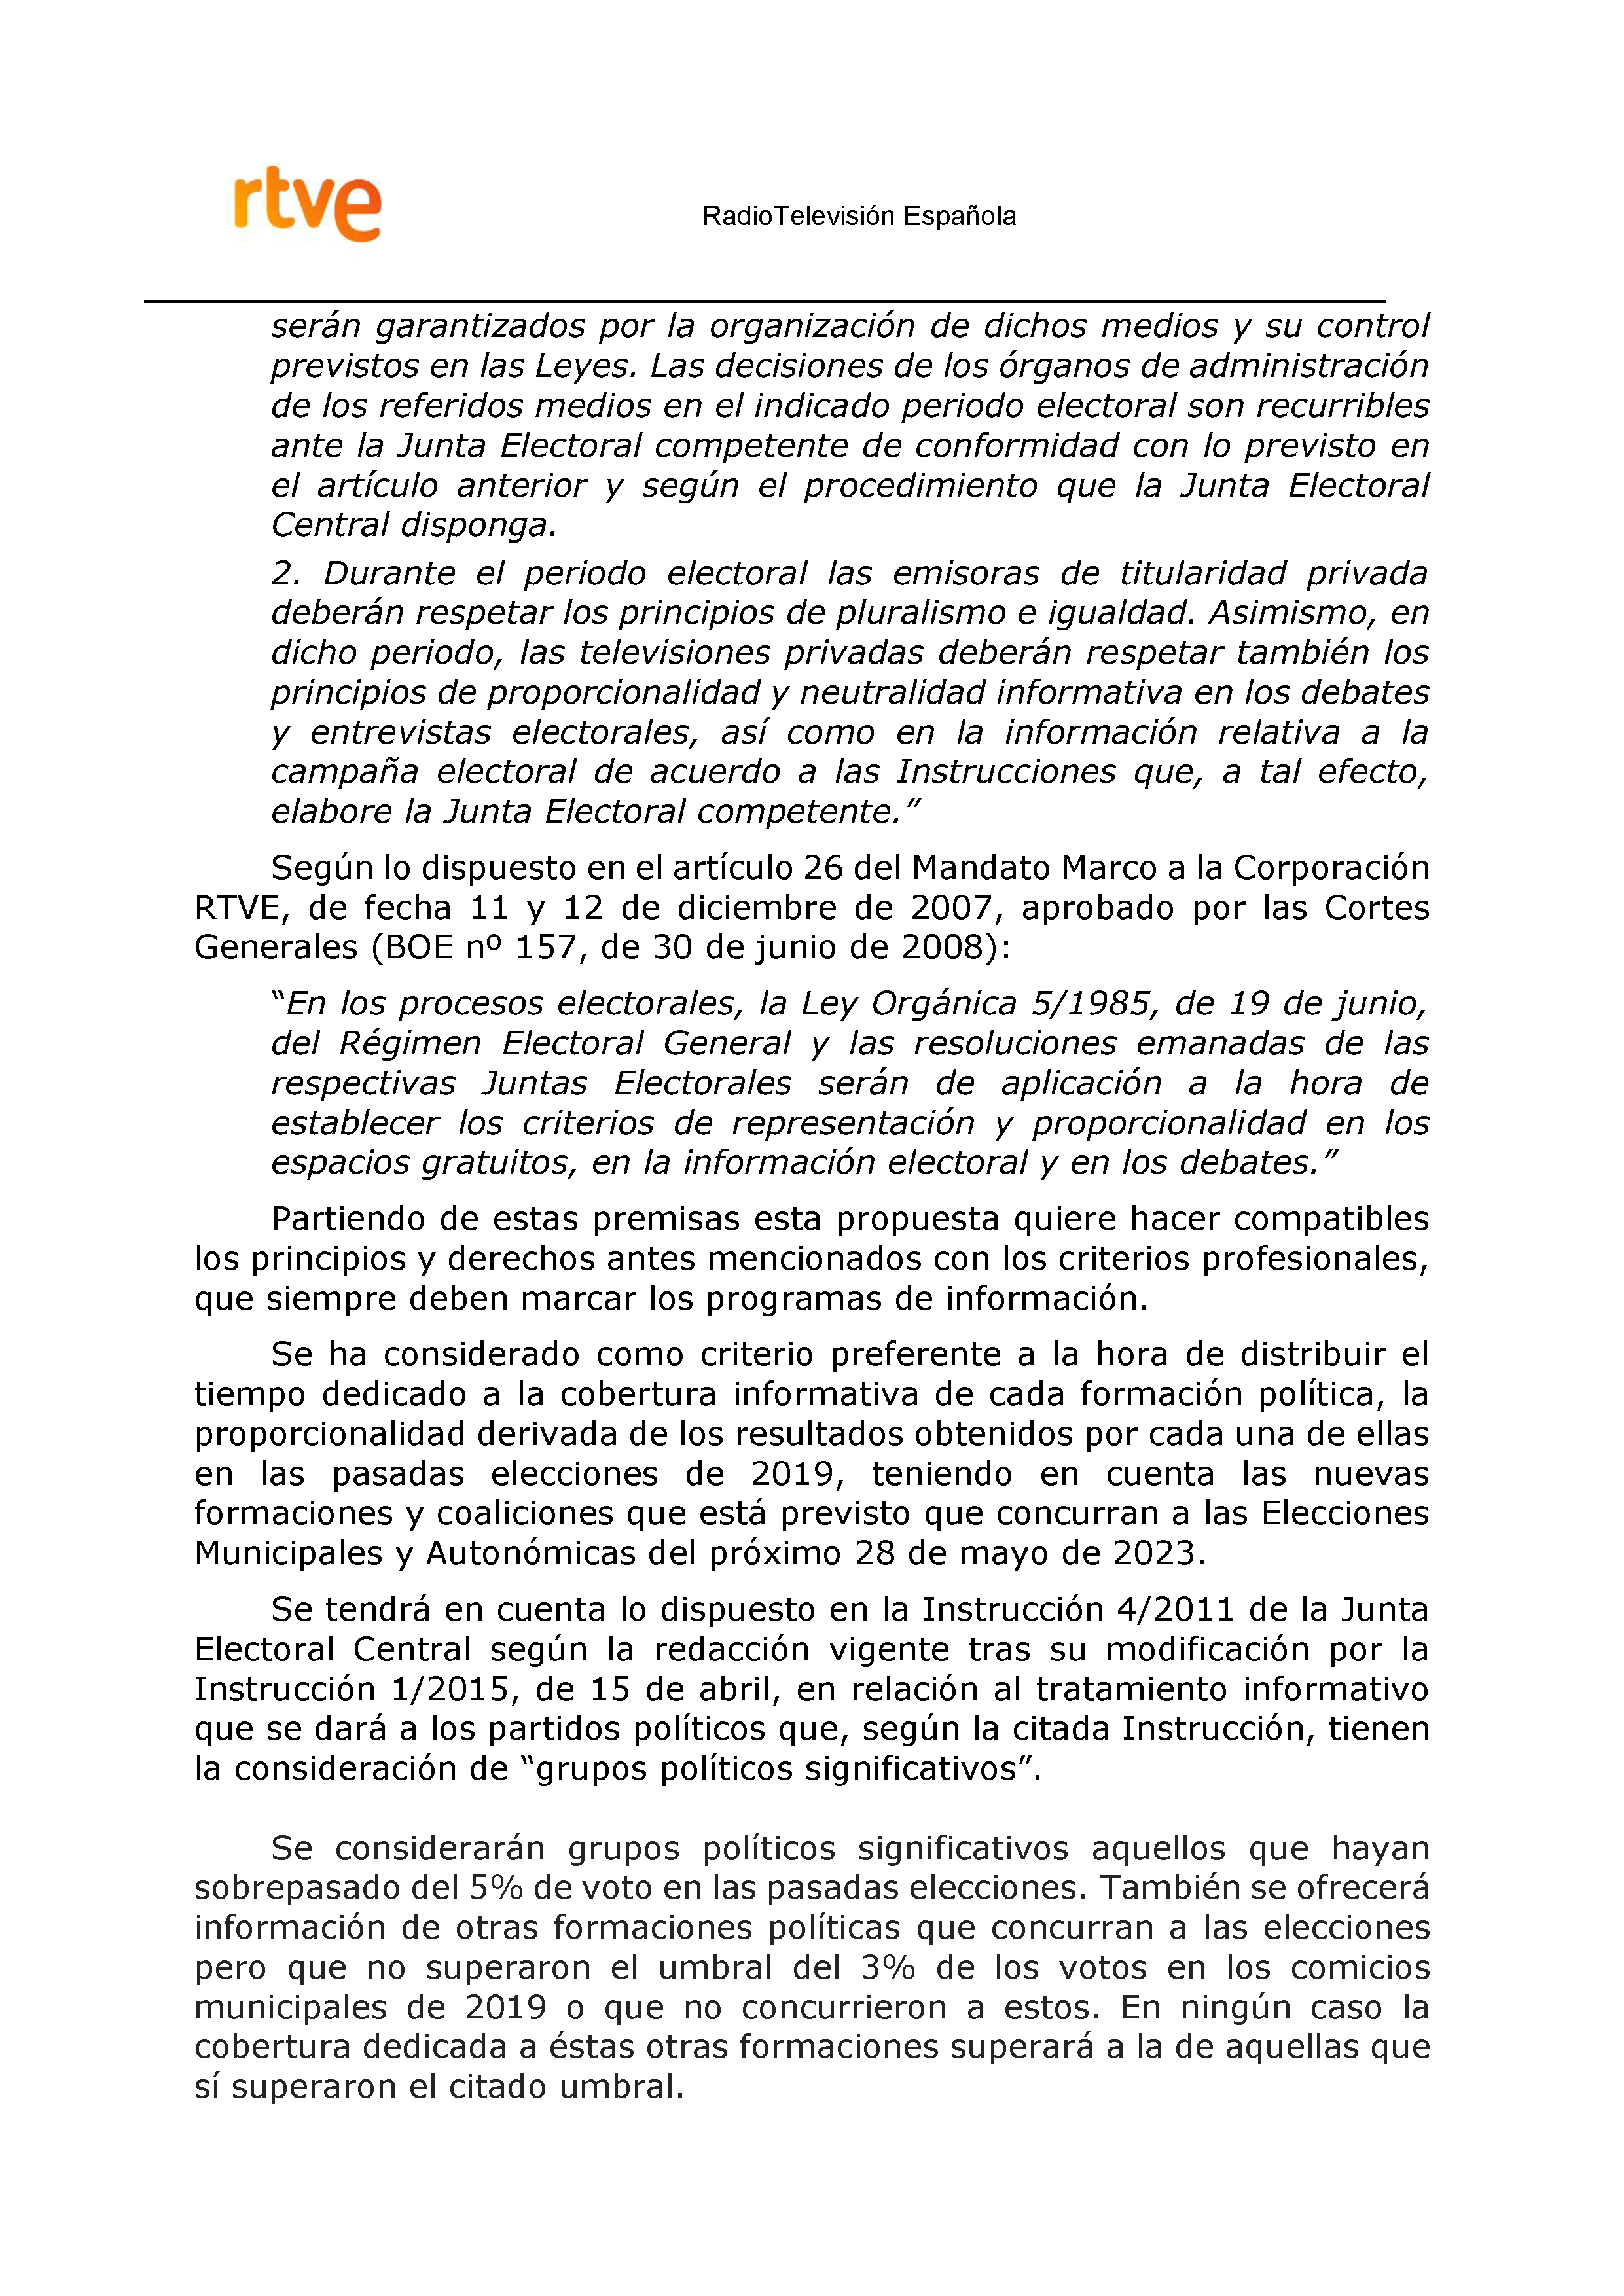 PLAN DE COBERTURA INFORMATIVA RTVE en Extremadura ELECCIONES MUNICIPALES Y AUTONÓMICAS Pag 3